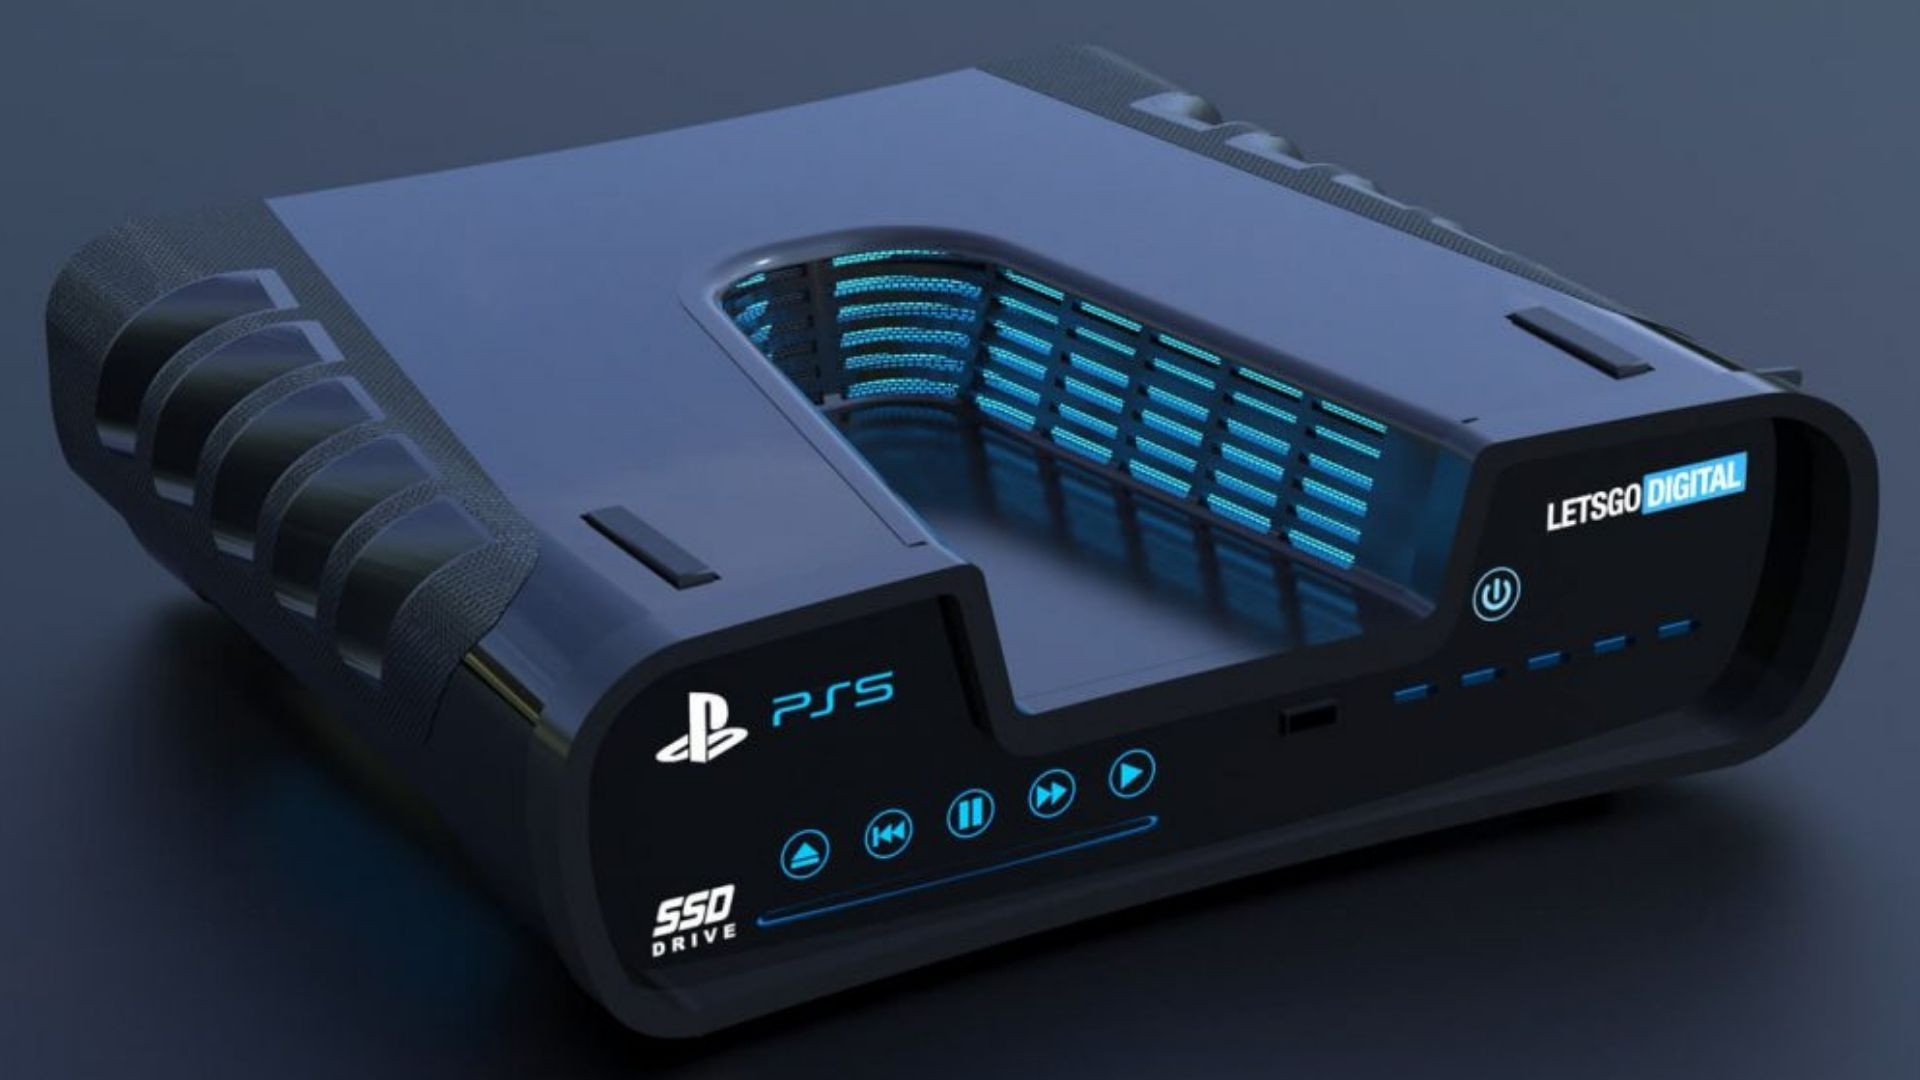 Первое живое фото PlayStation 5 утекло в Сеть - ВИДЕО